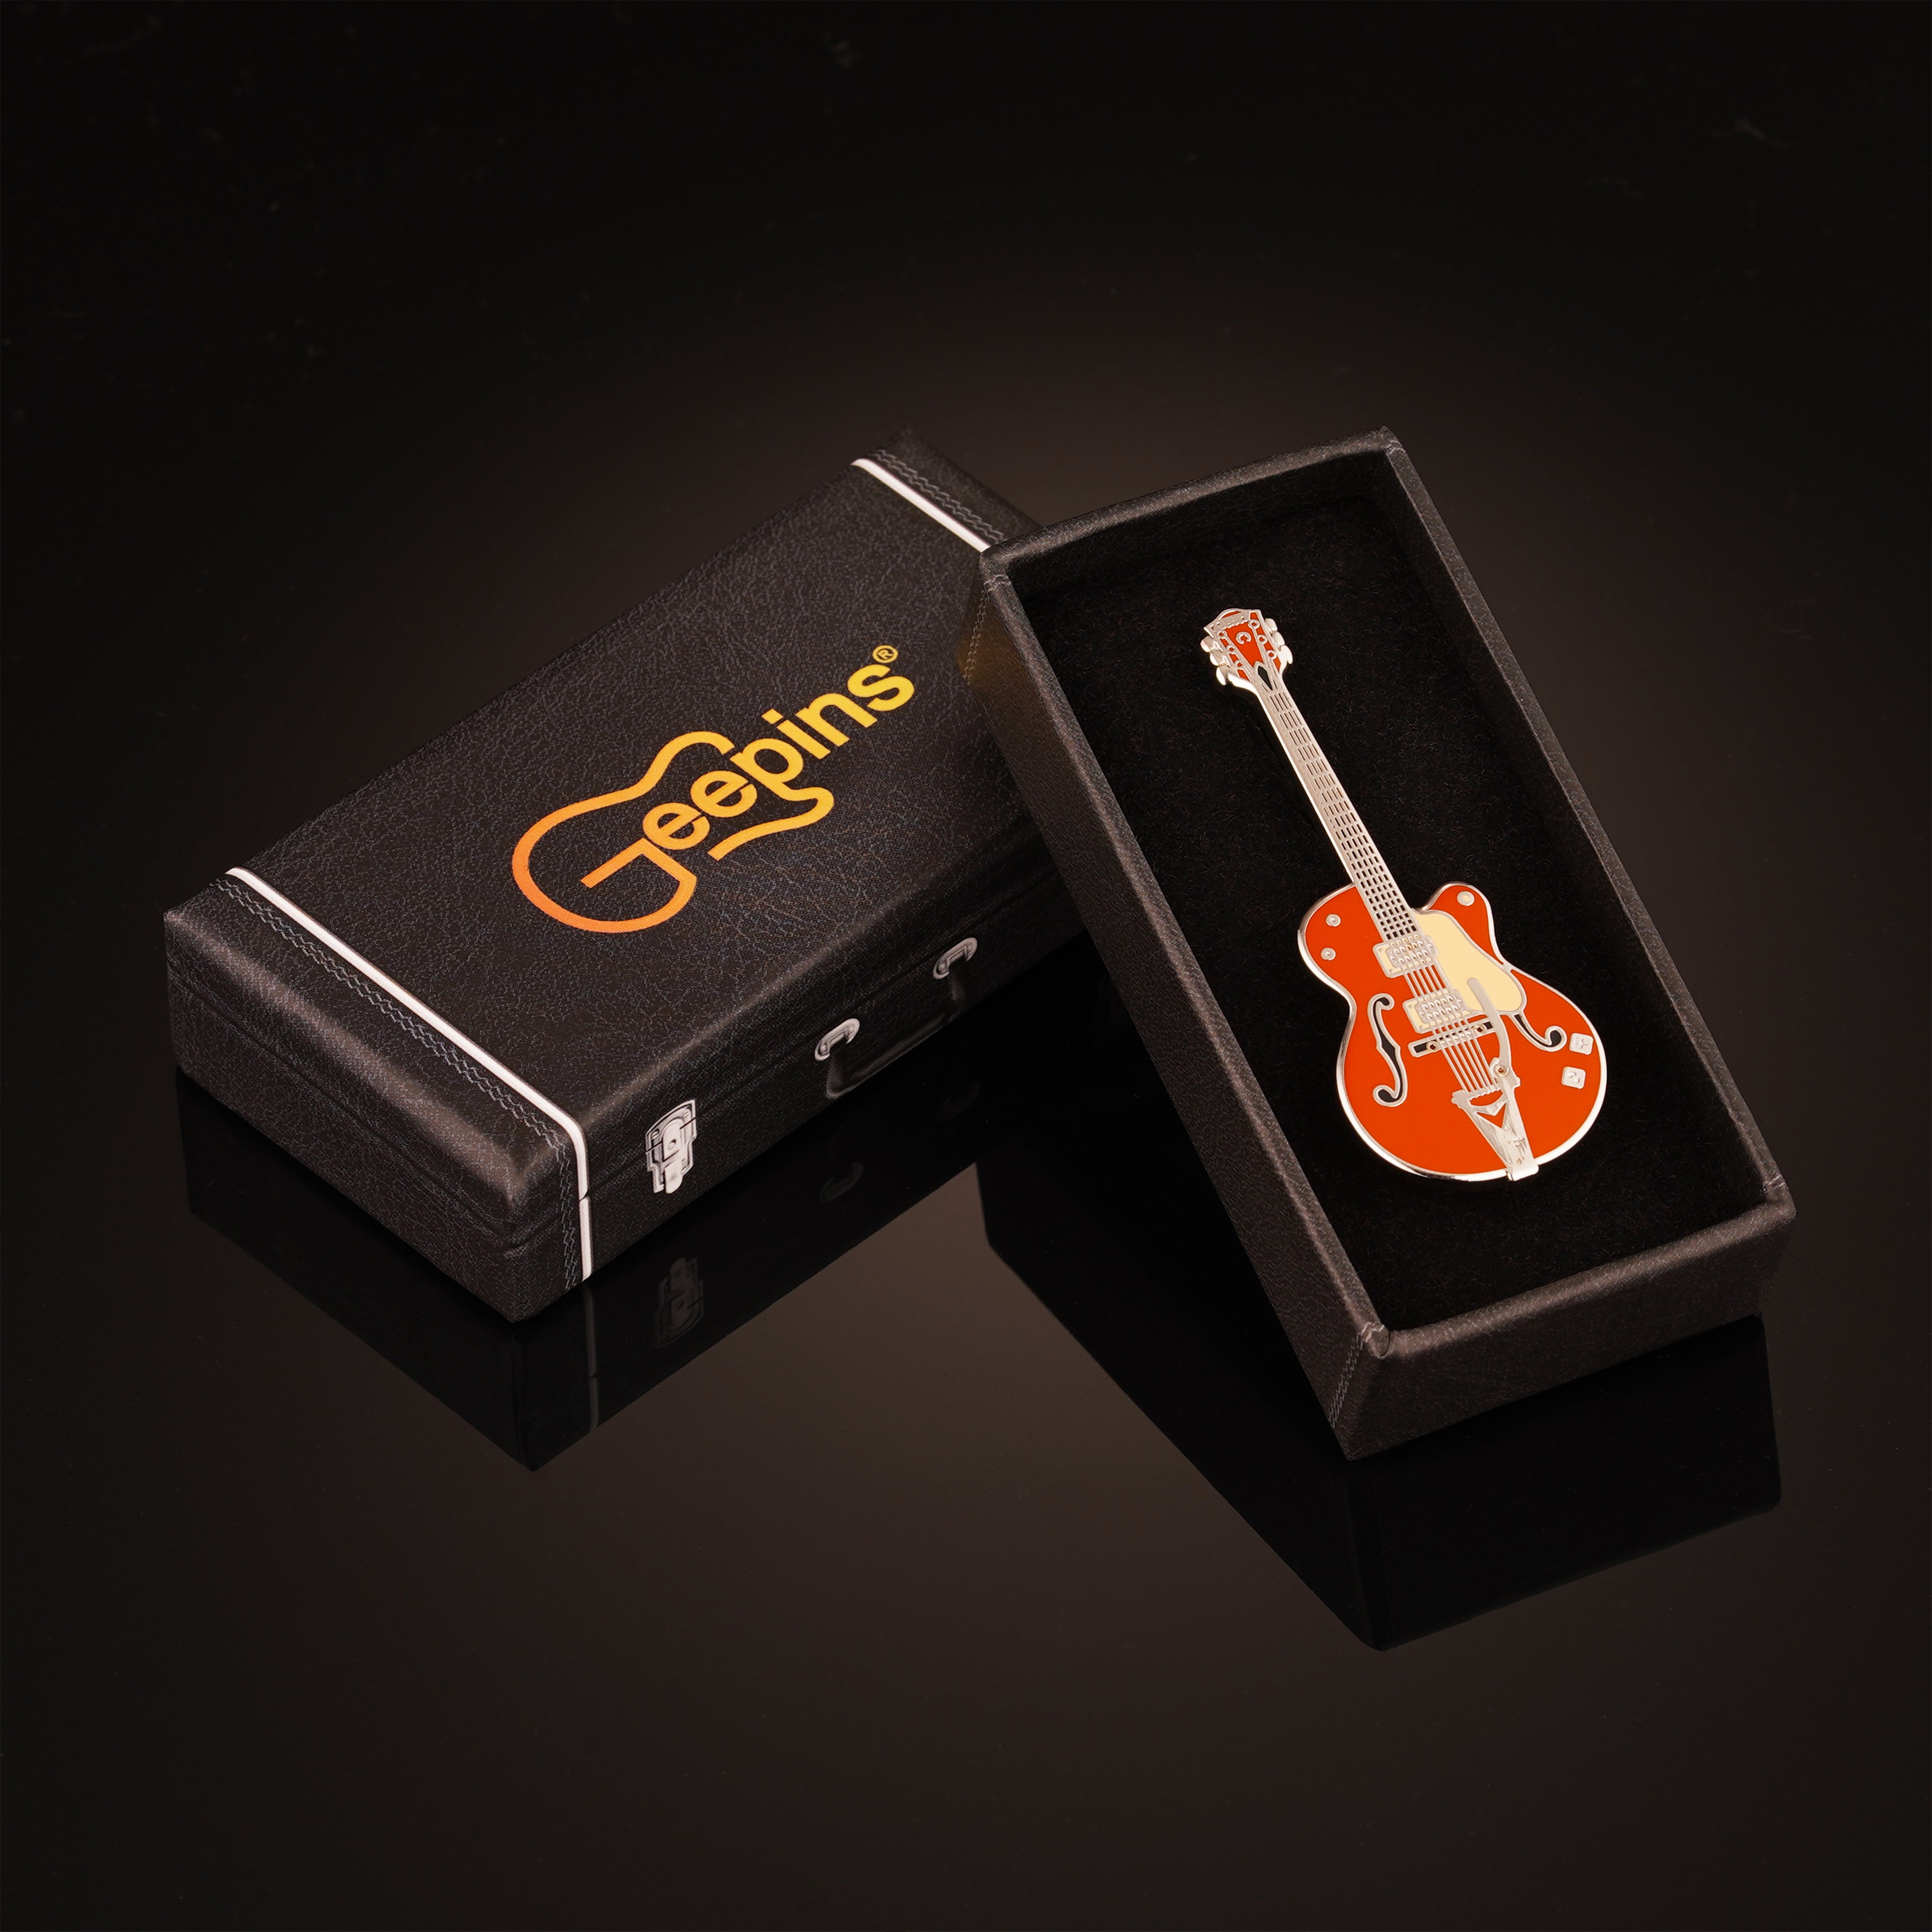 Geepin Gretsch Orange Guitar Pin